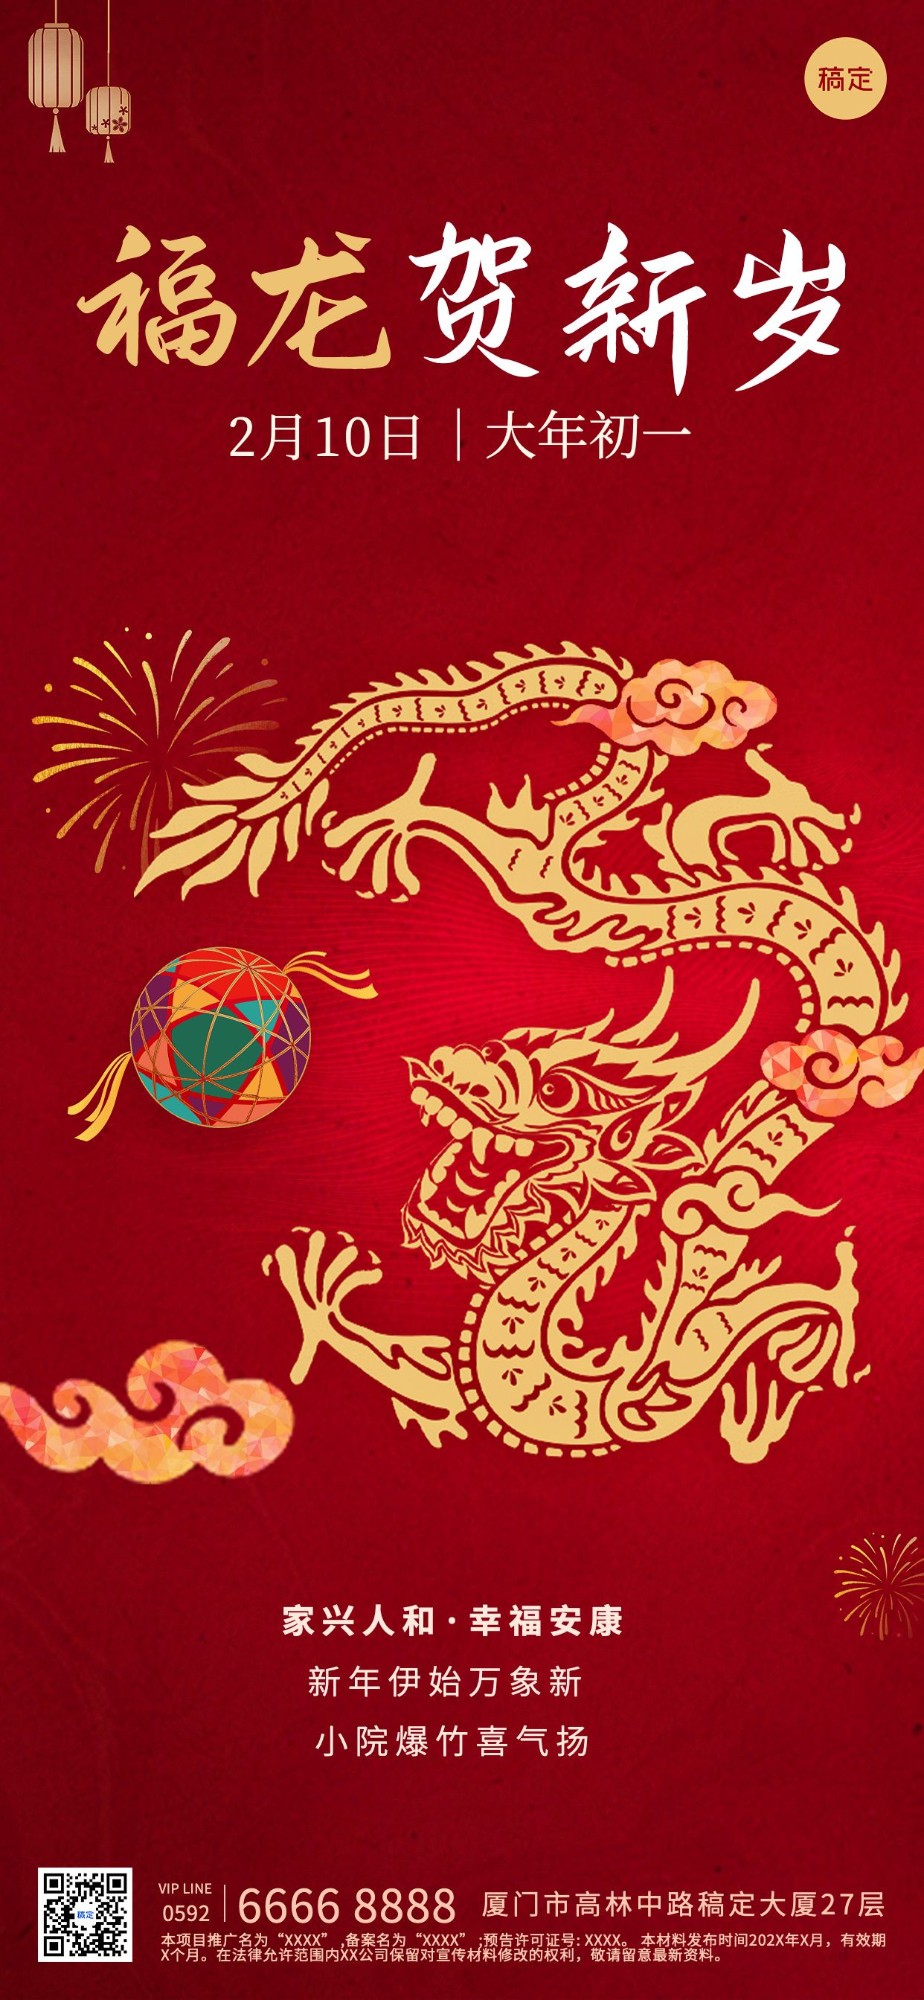 春节房地产正月初一龙年节日祝福剪影风全屏竖版海报